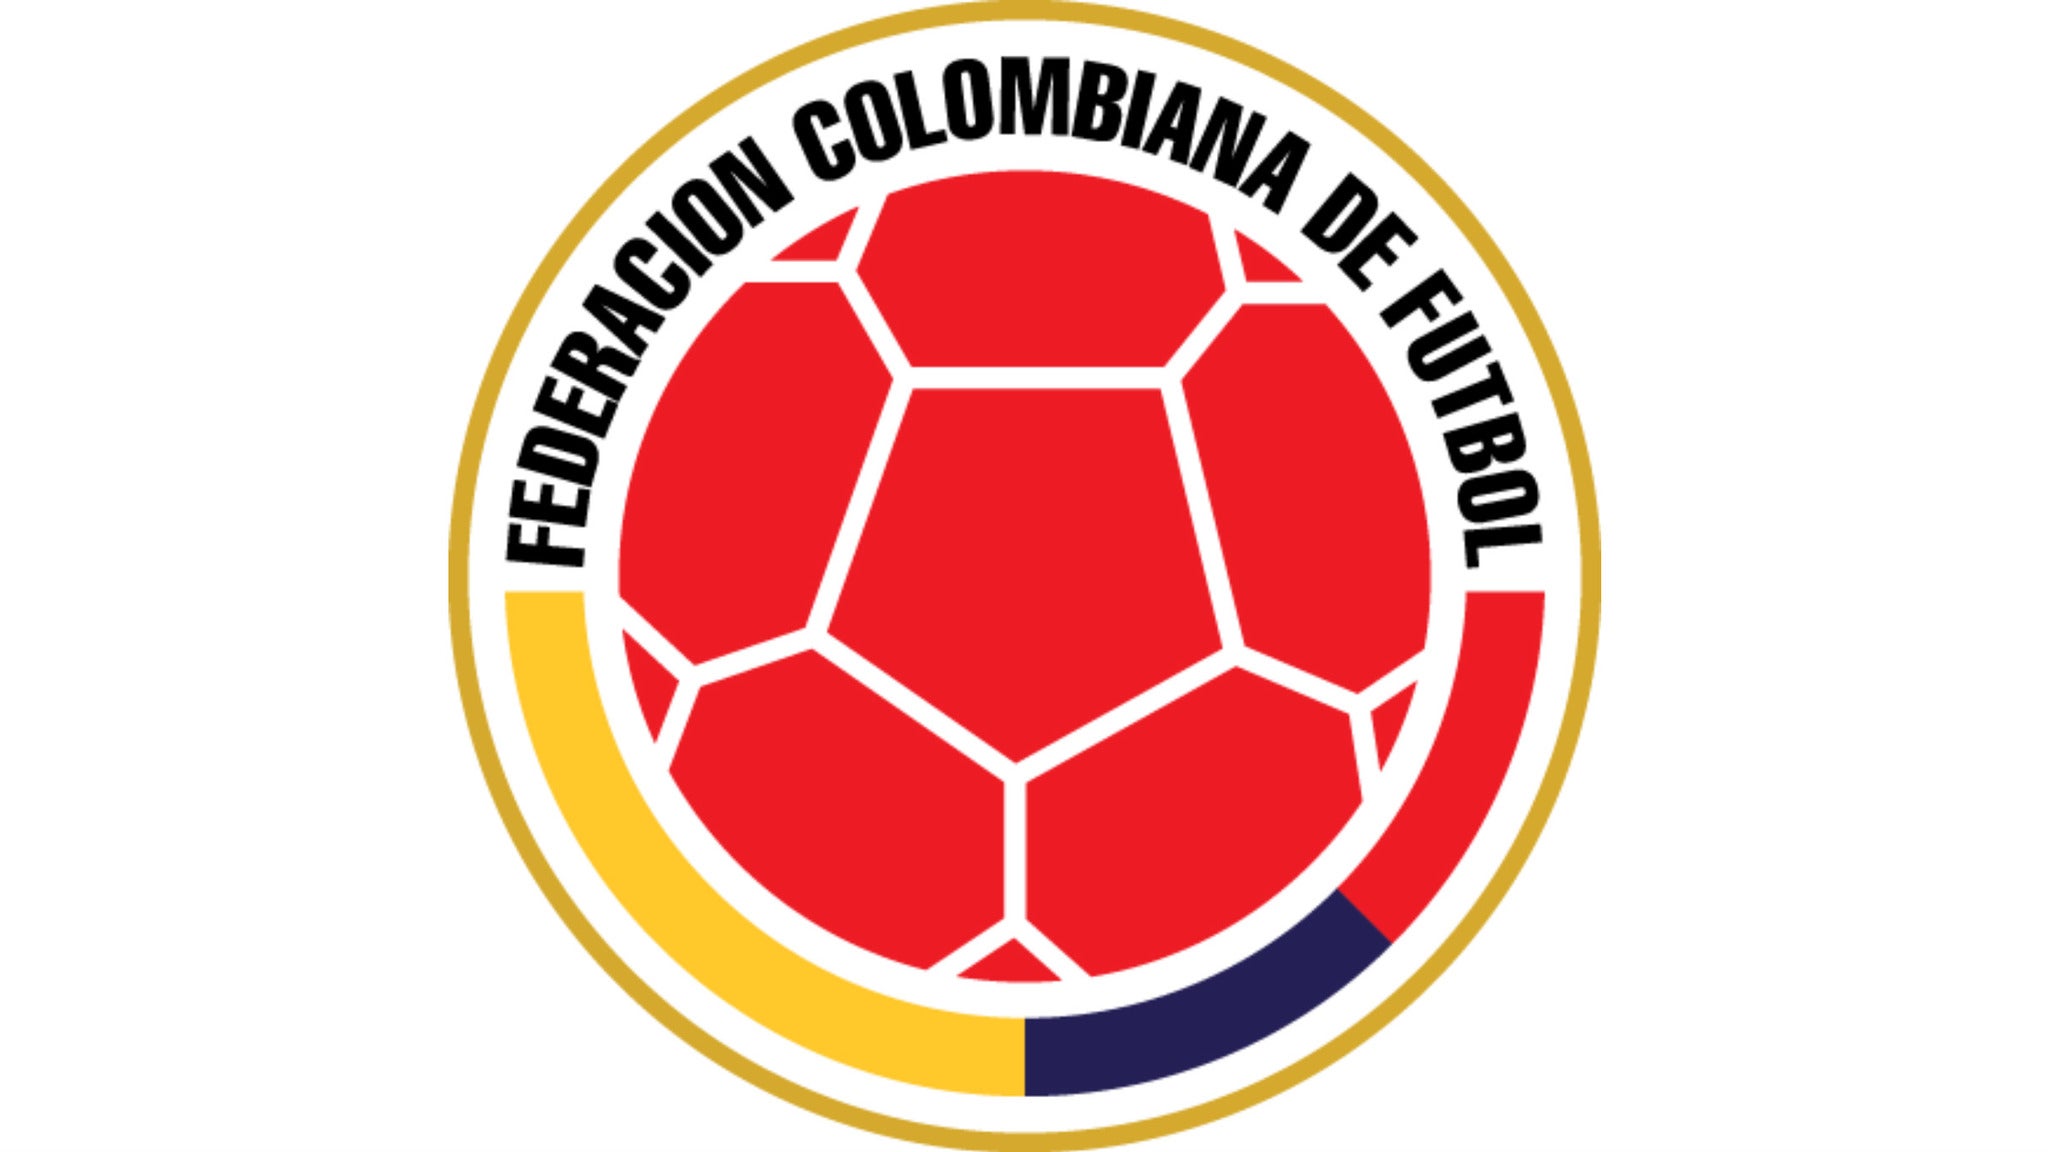 Colombia vs. PerÃº in Miami promo photo for Members / Sponsors presale offer code